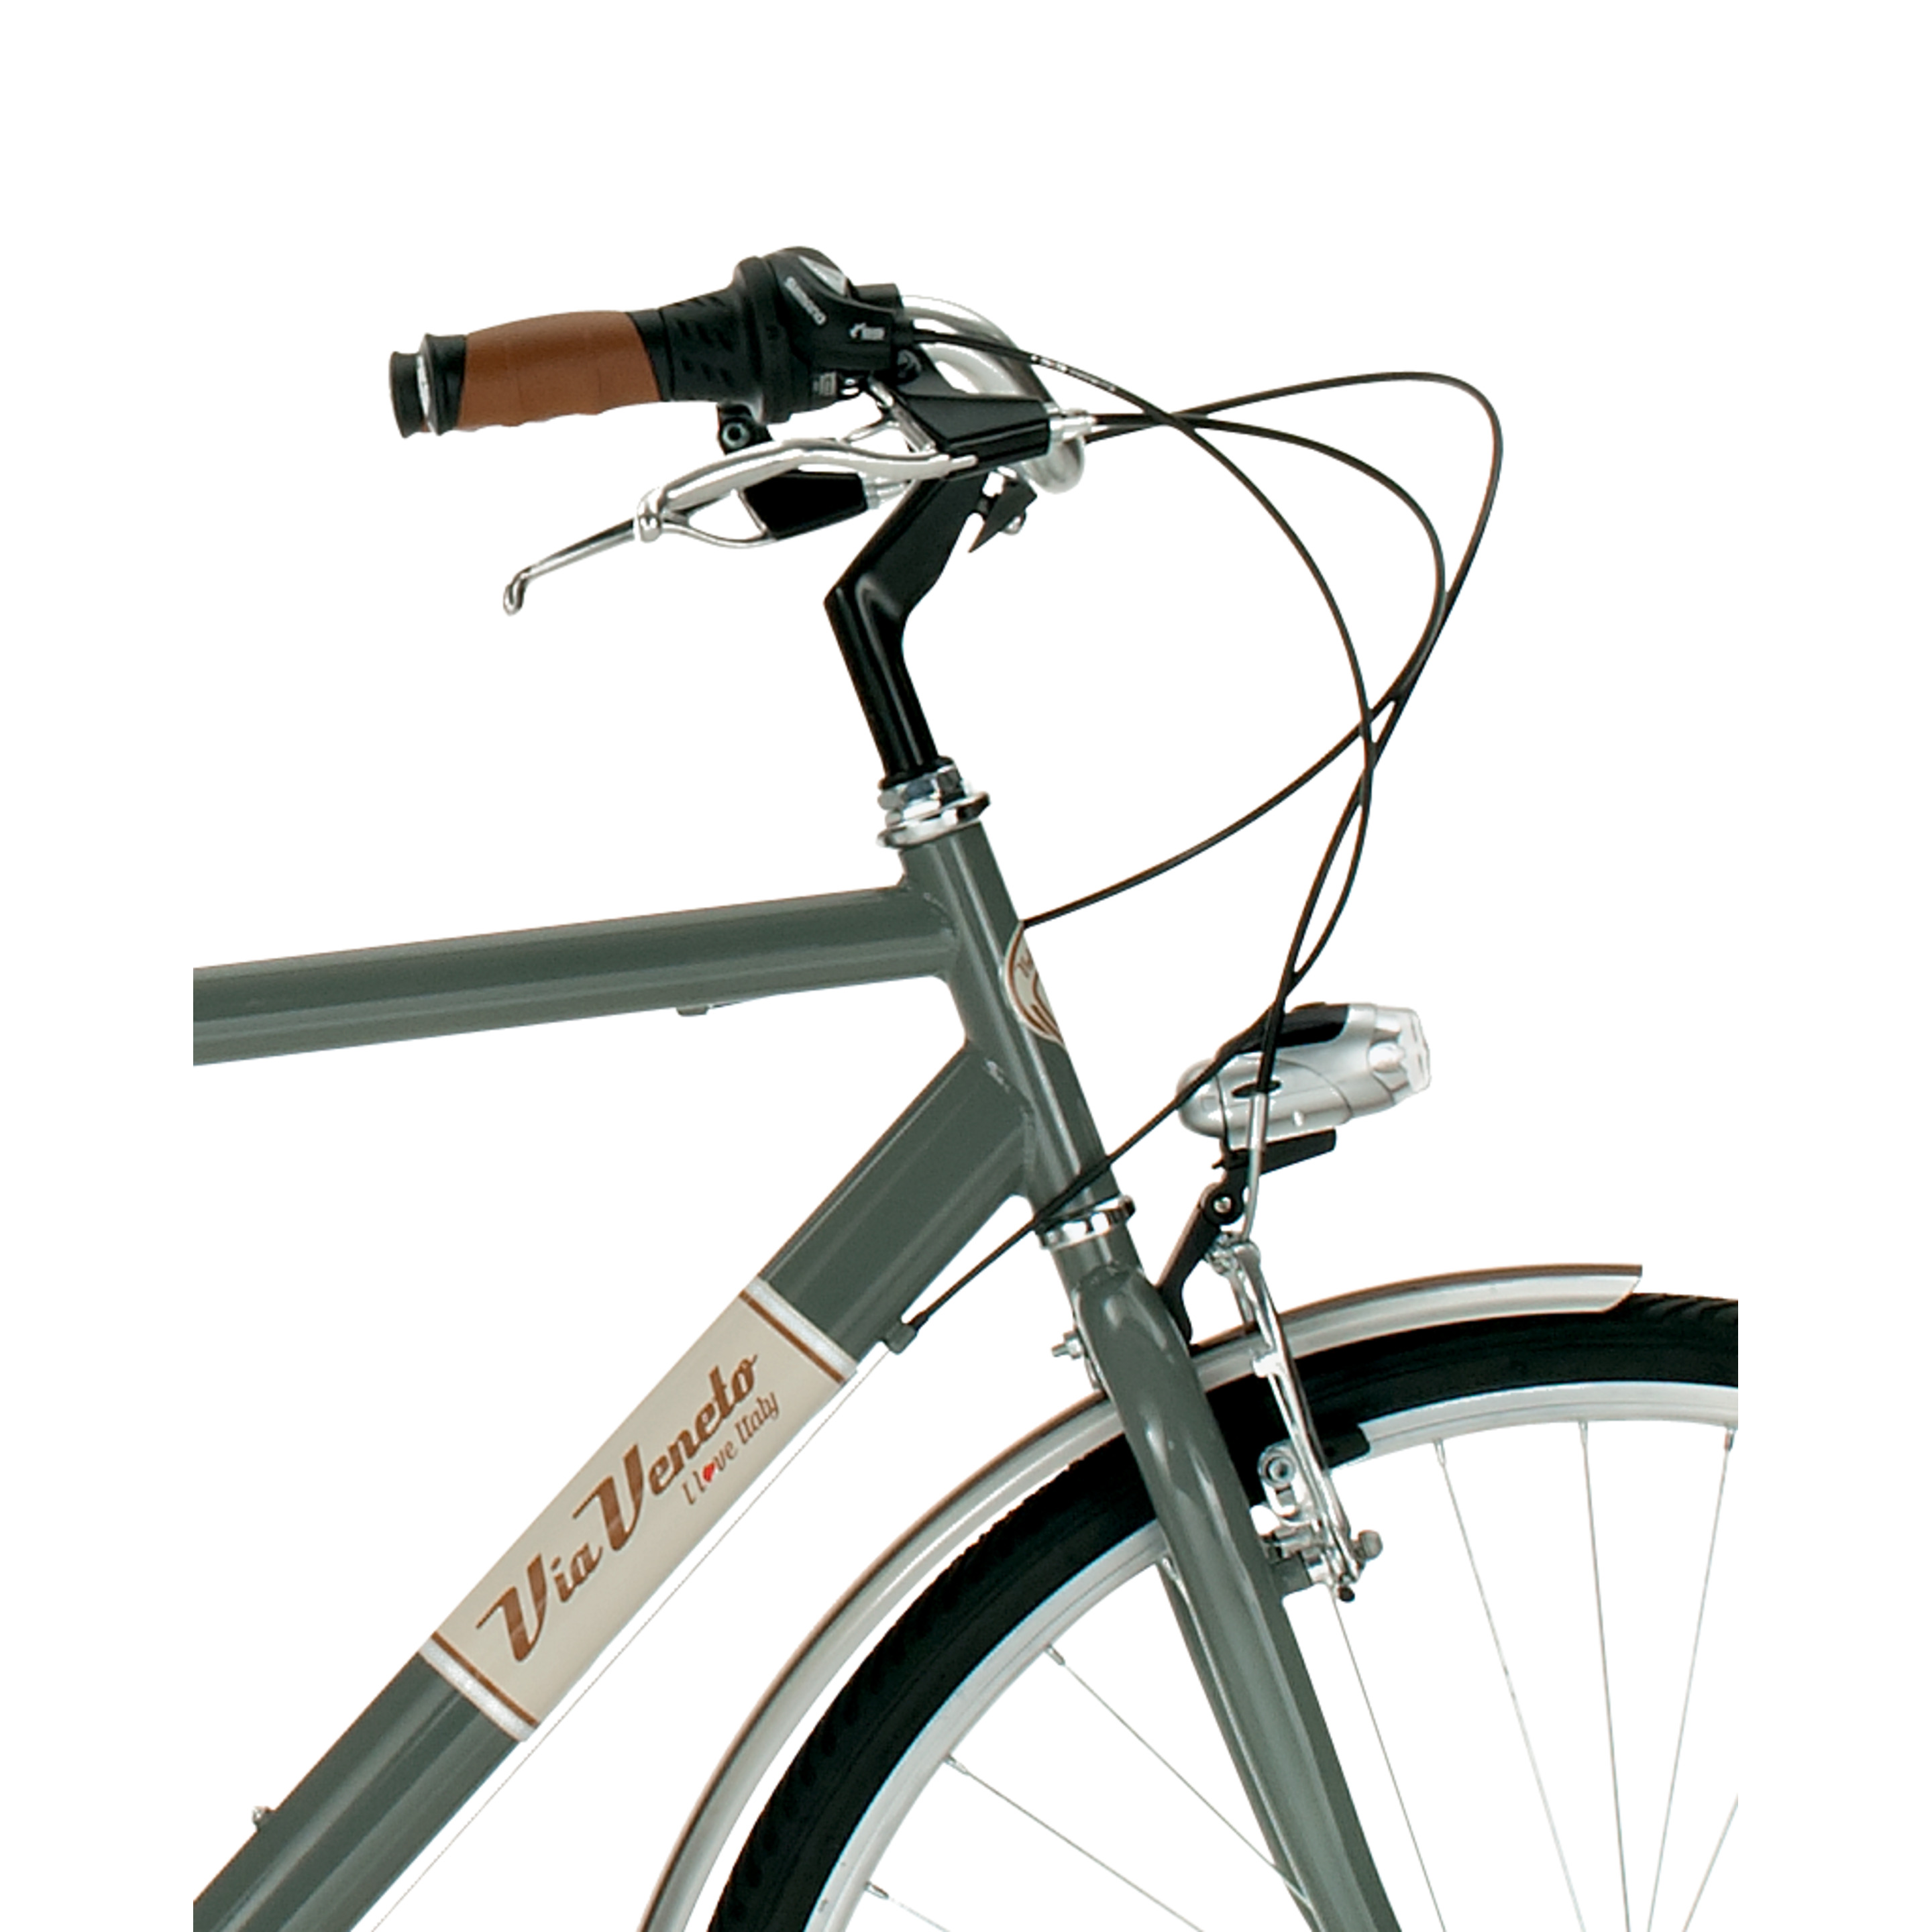 Bicicleta Via Veneto 605man, Cuadro De Acero De 50cm, Ruedas De 700x35c, 6 Velocidades Gris